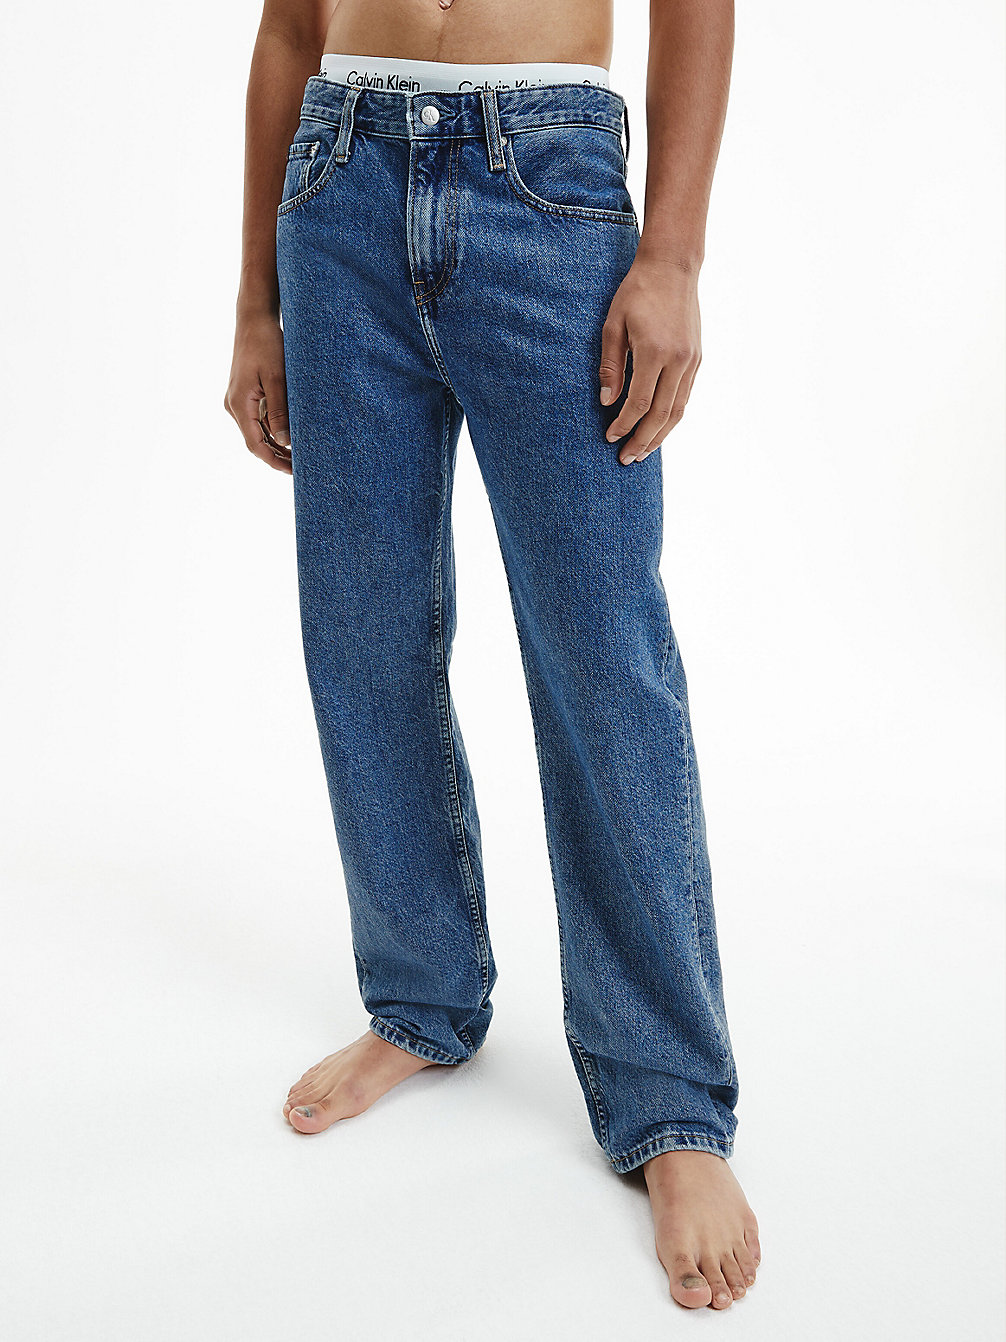 DENIM MEDIUM Straight Jeans undefined Herren Calvin Klein